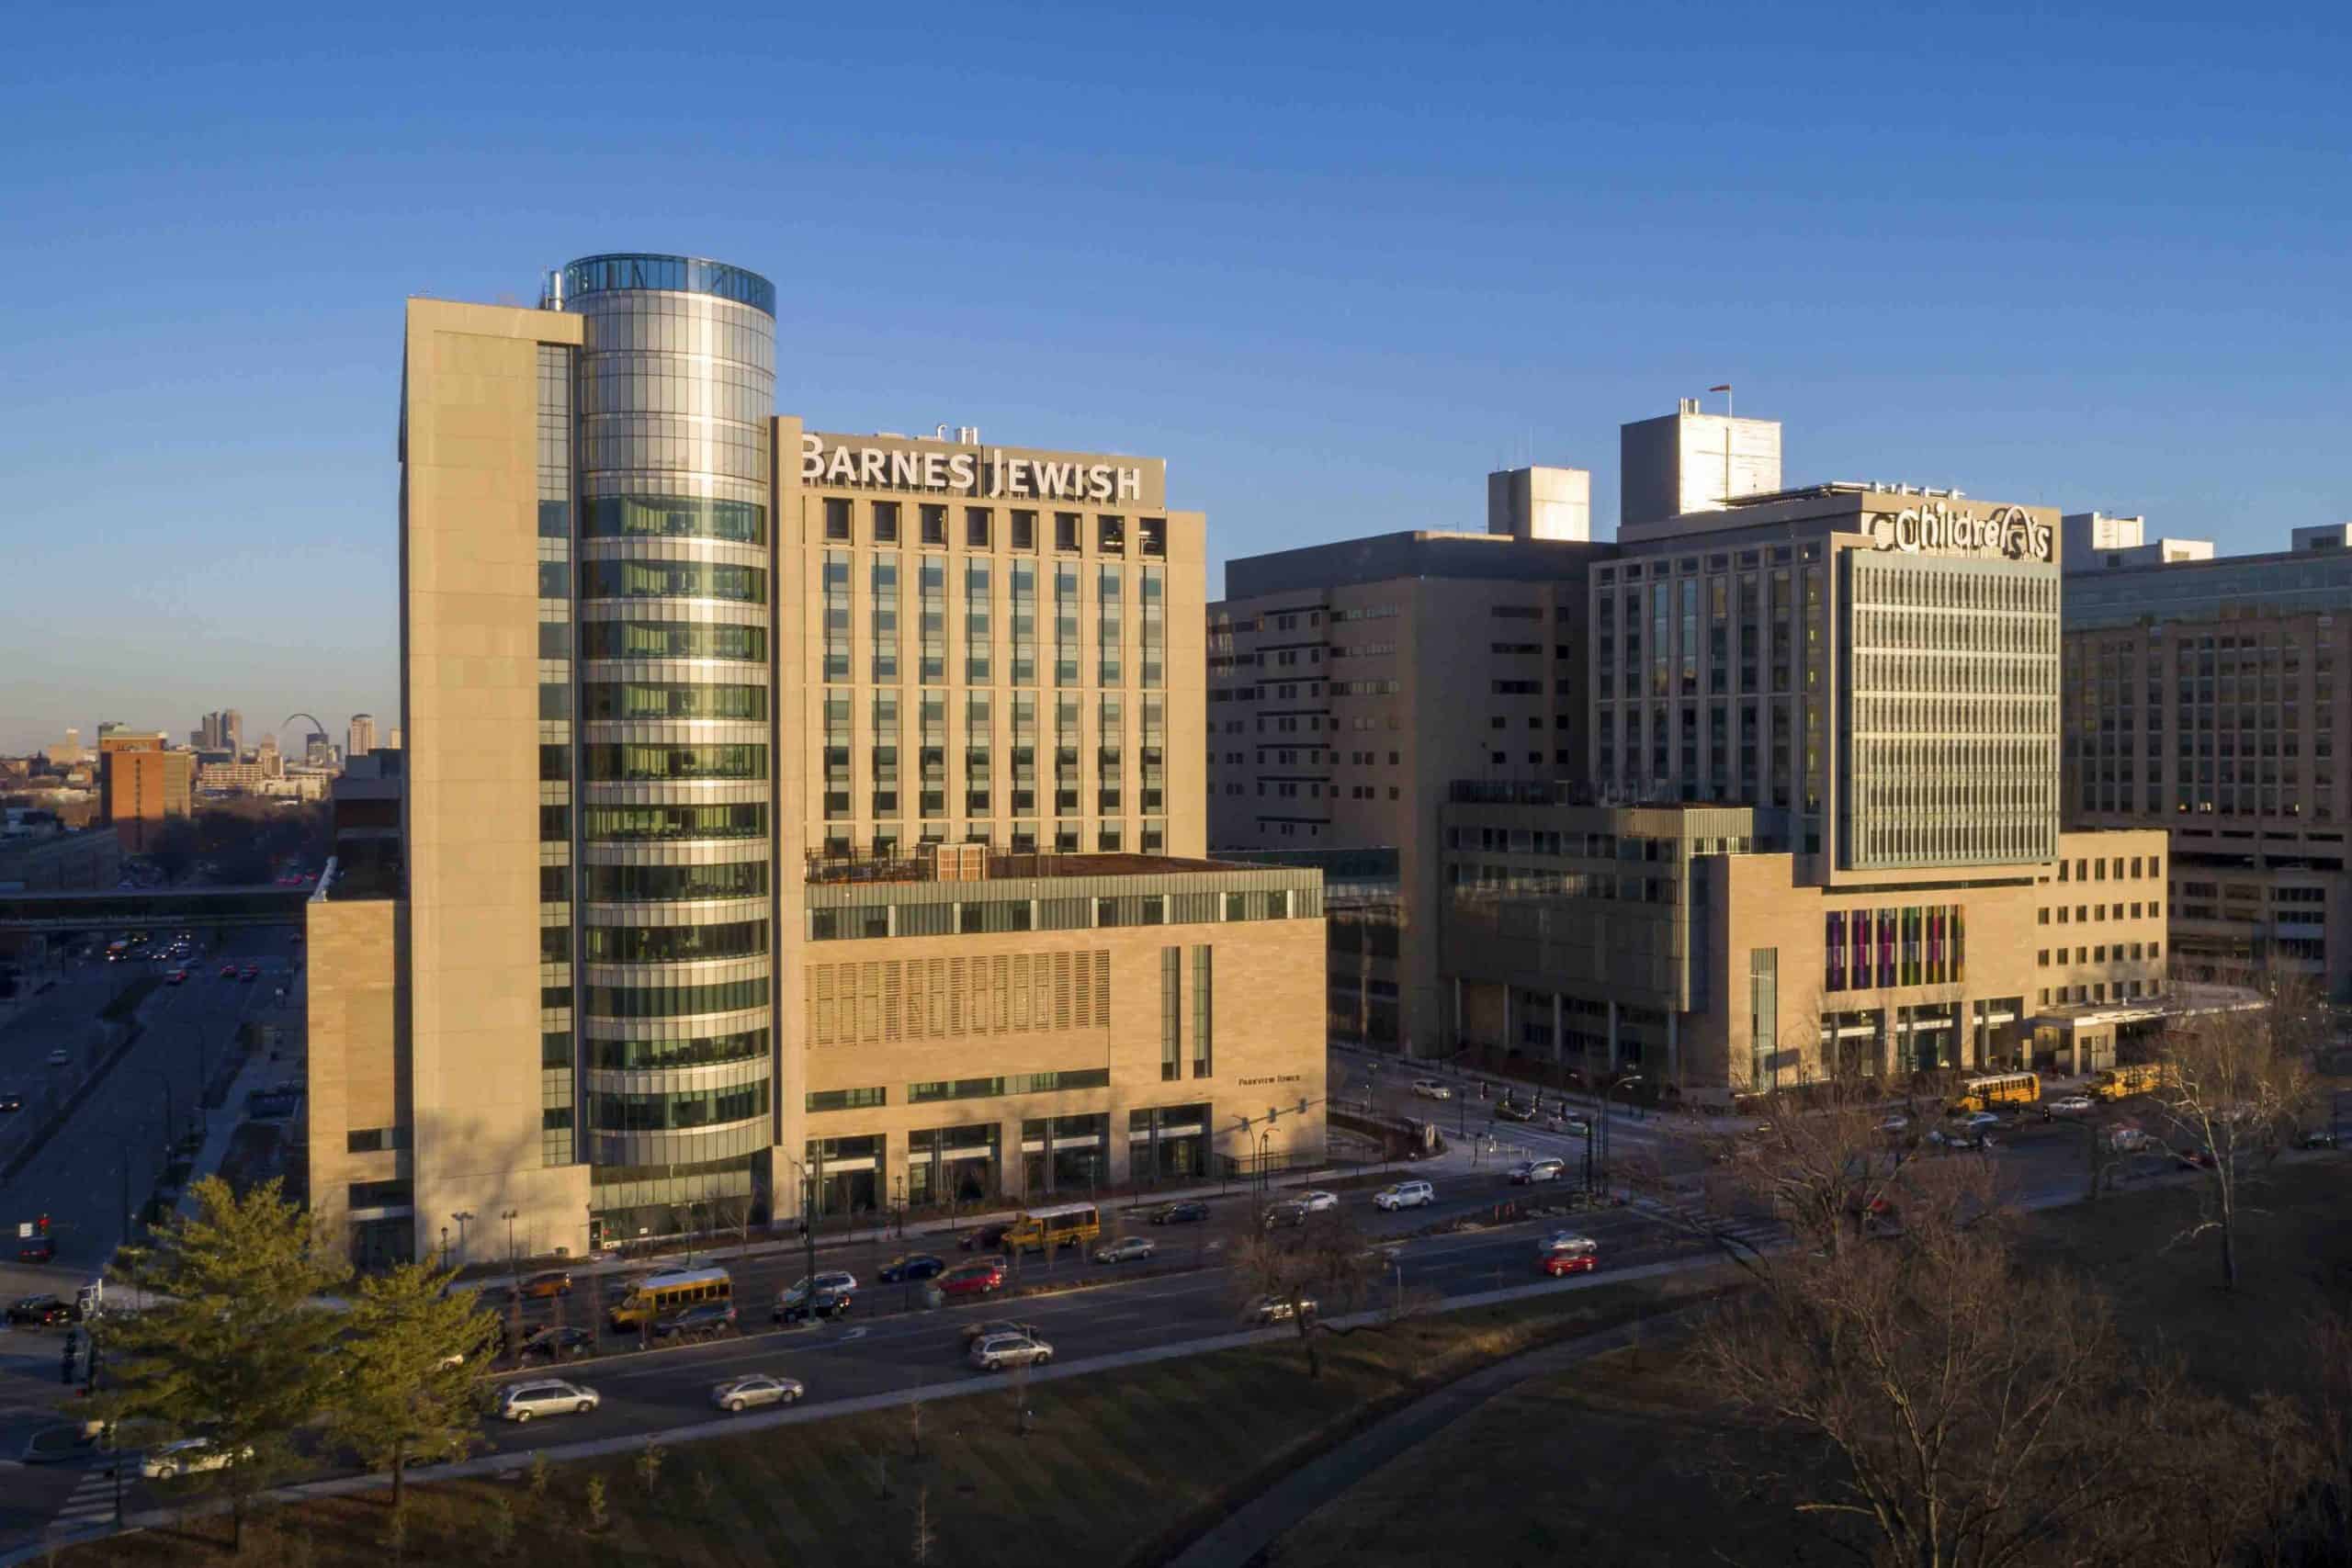 Washington University Medical Center